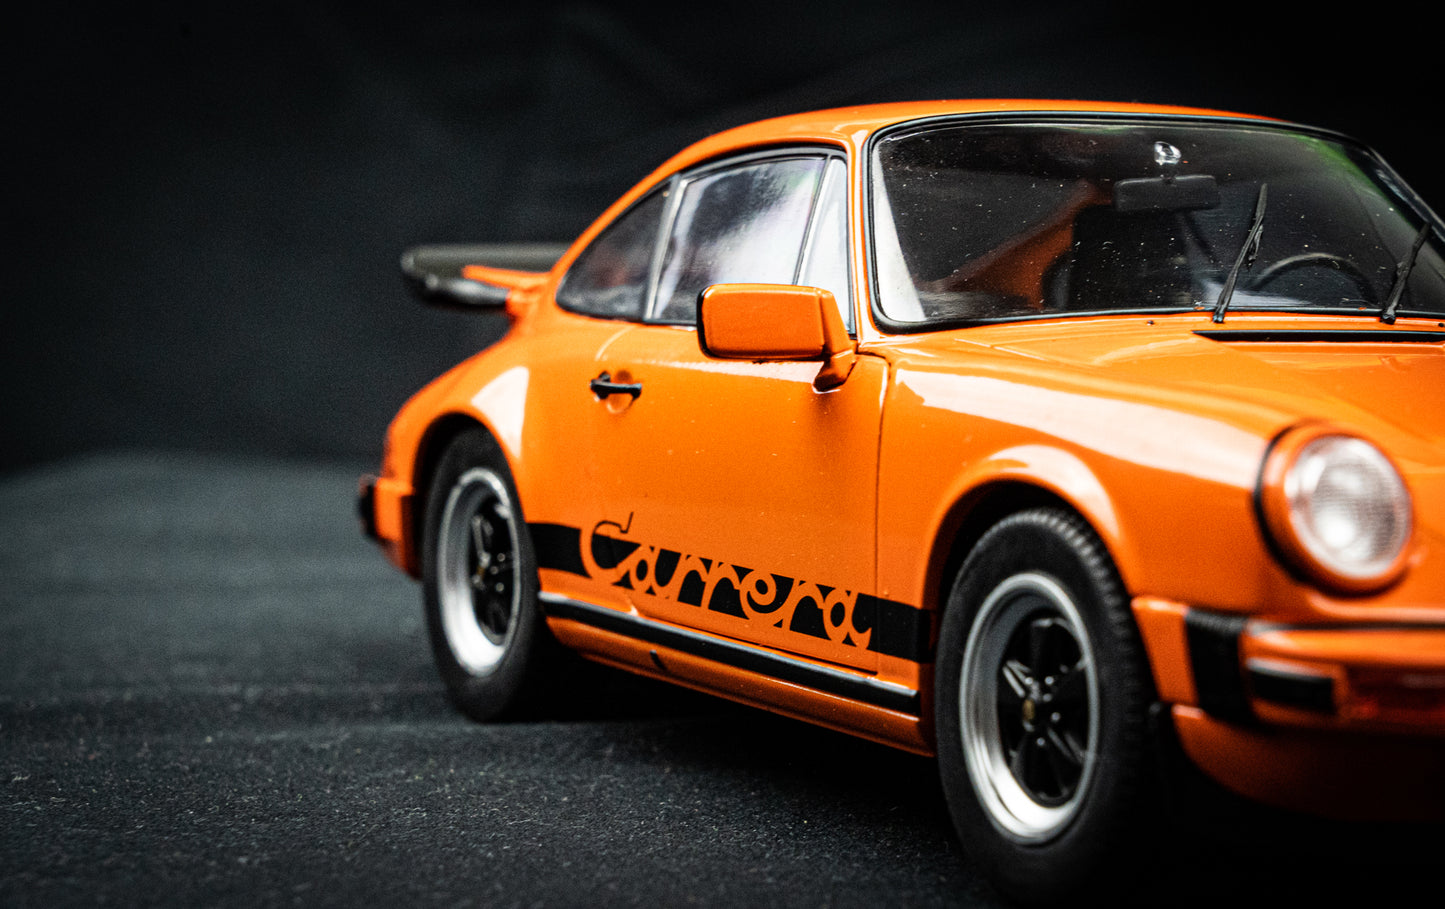 Porsche 911 Carrera 3.2 orange Baujahr 1984 - Solido 1:18